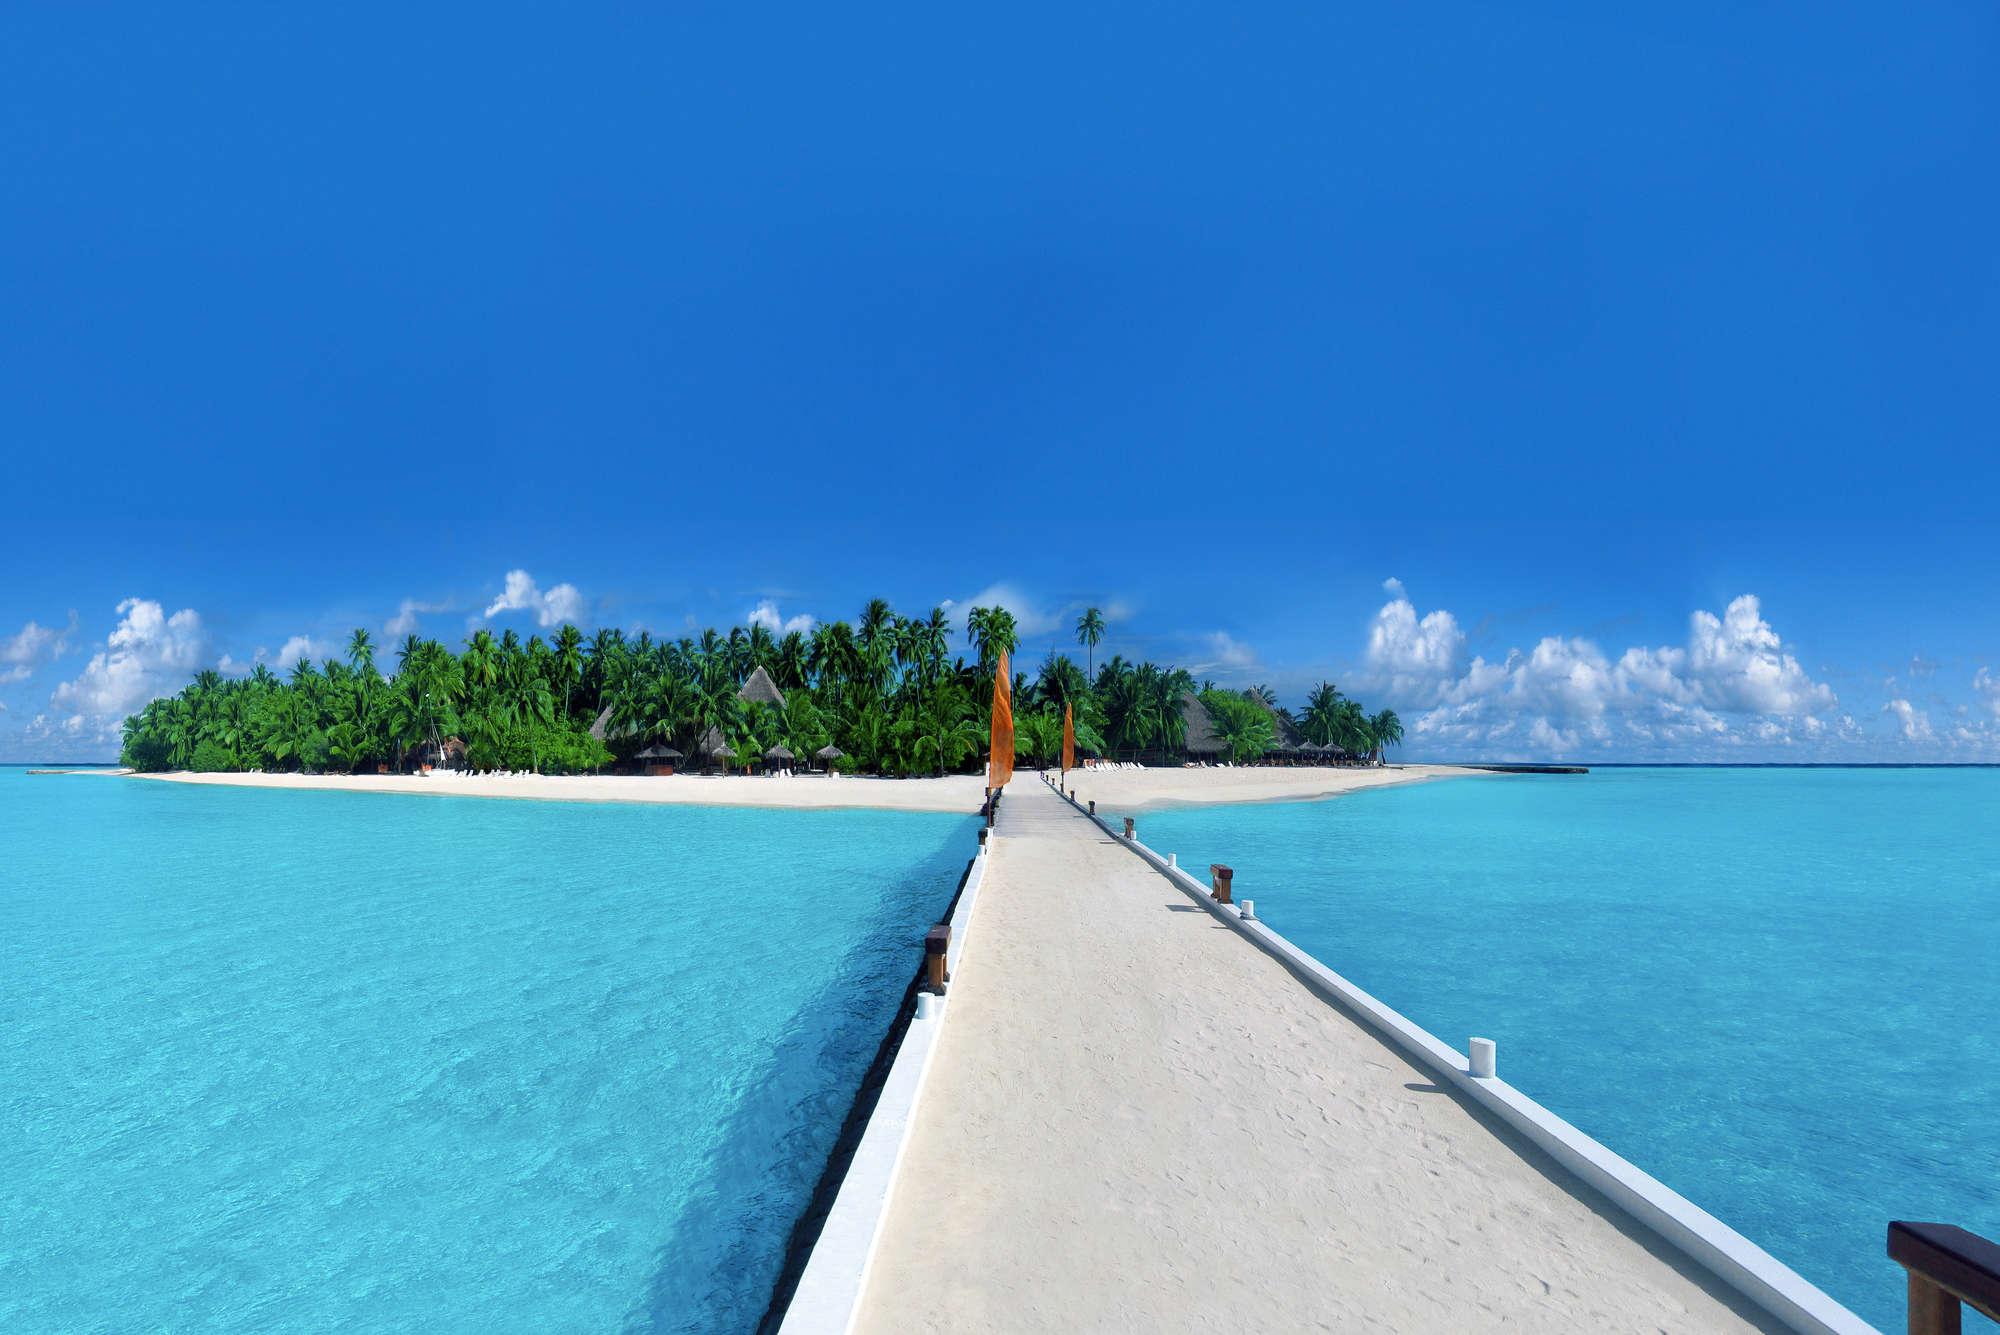             Fotomurali Isola con pontile sulla spiaggia - Pile liscio premium
        